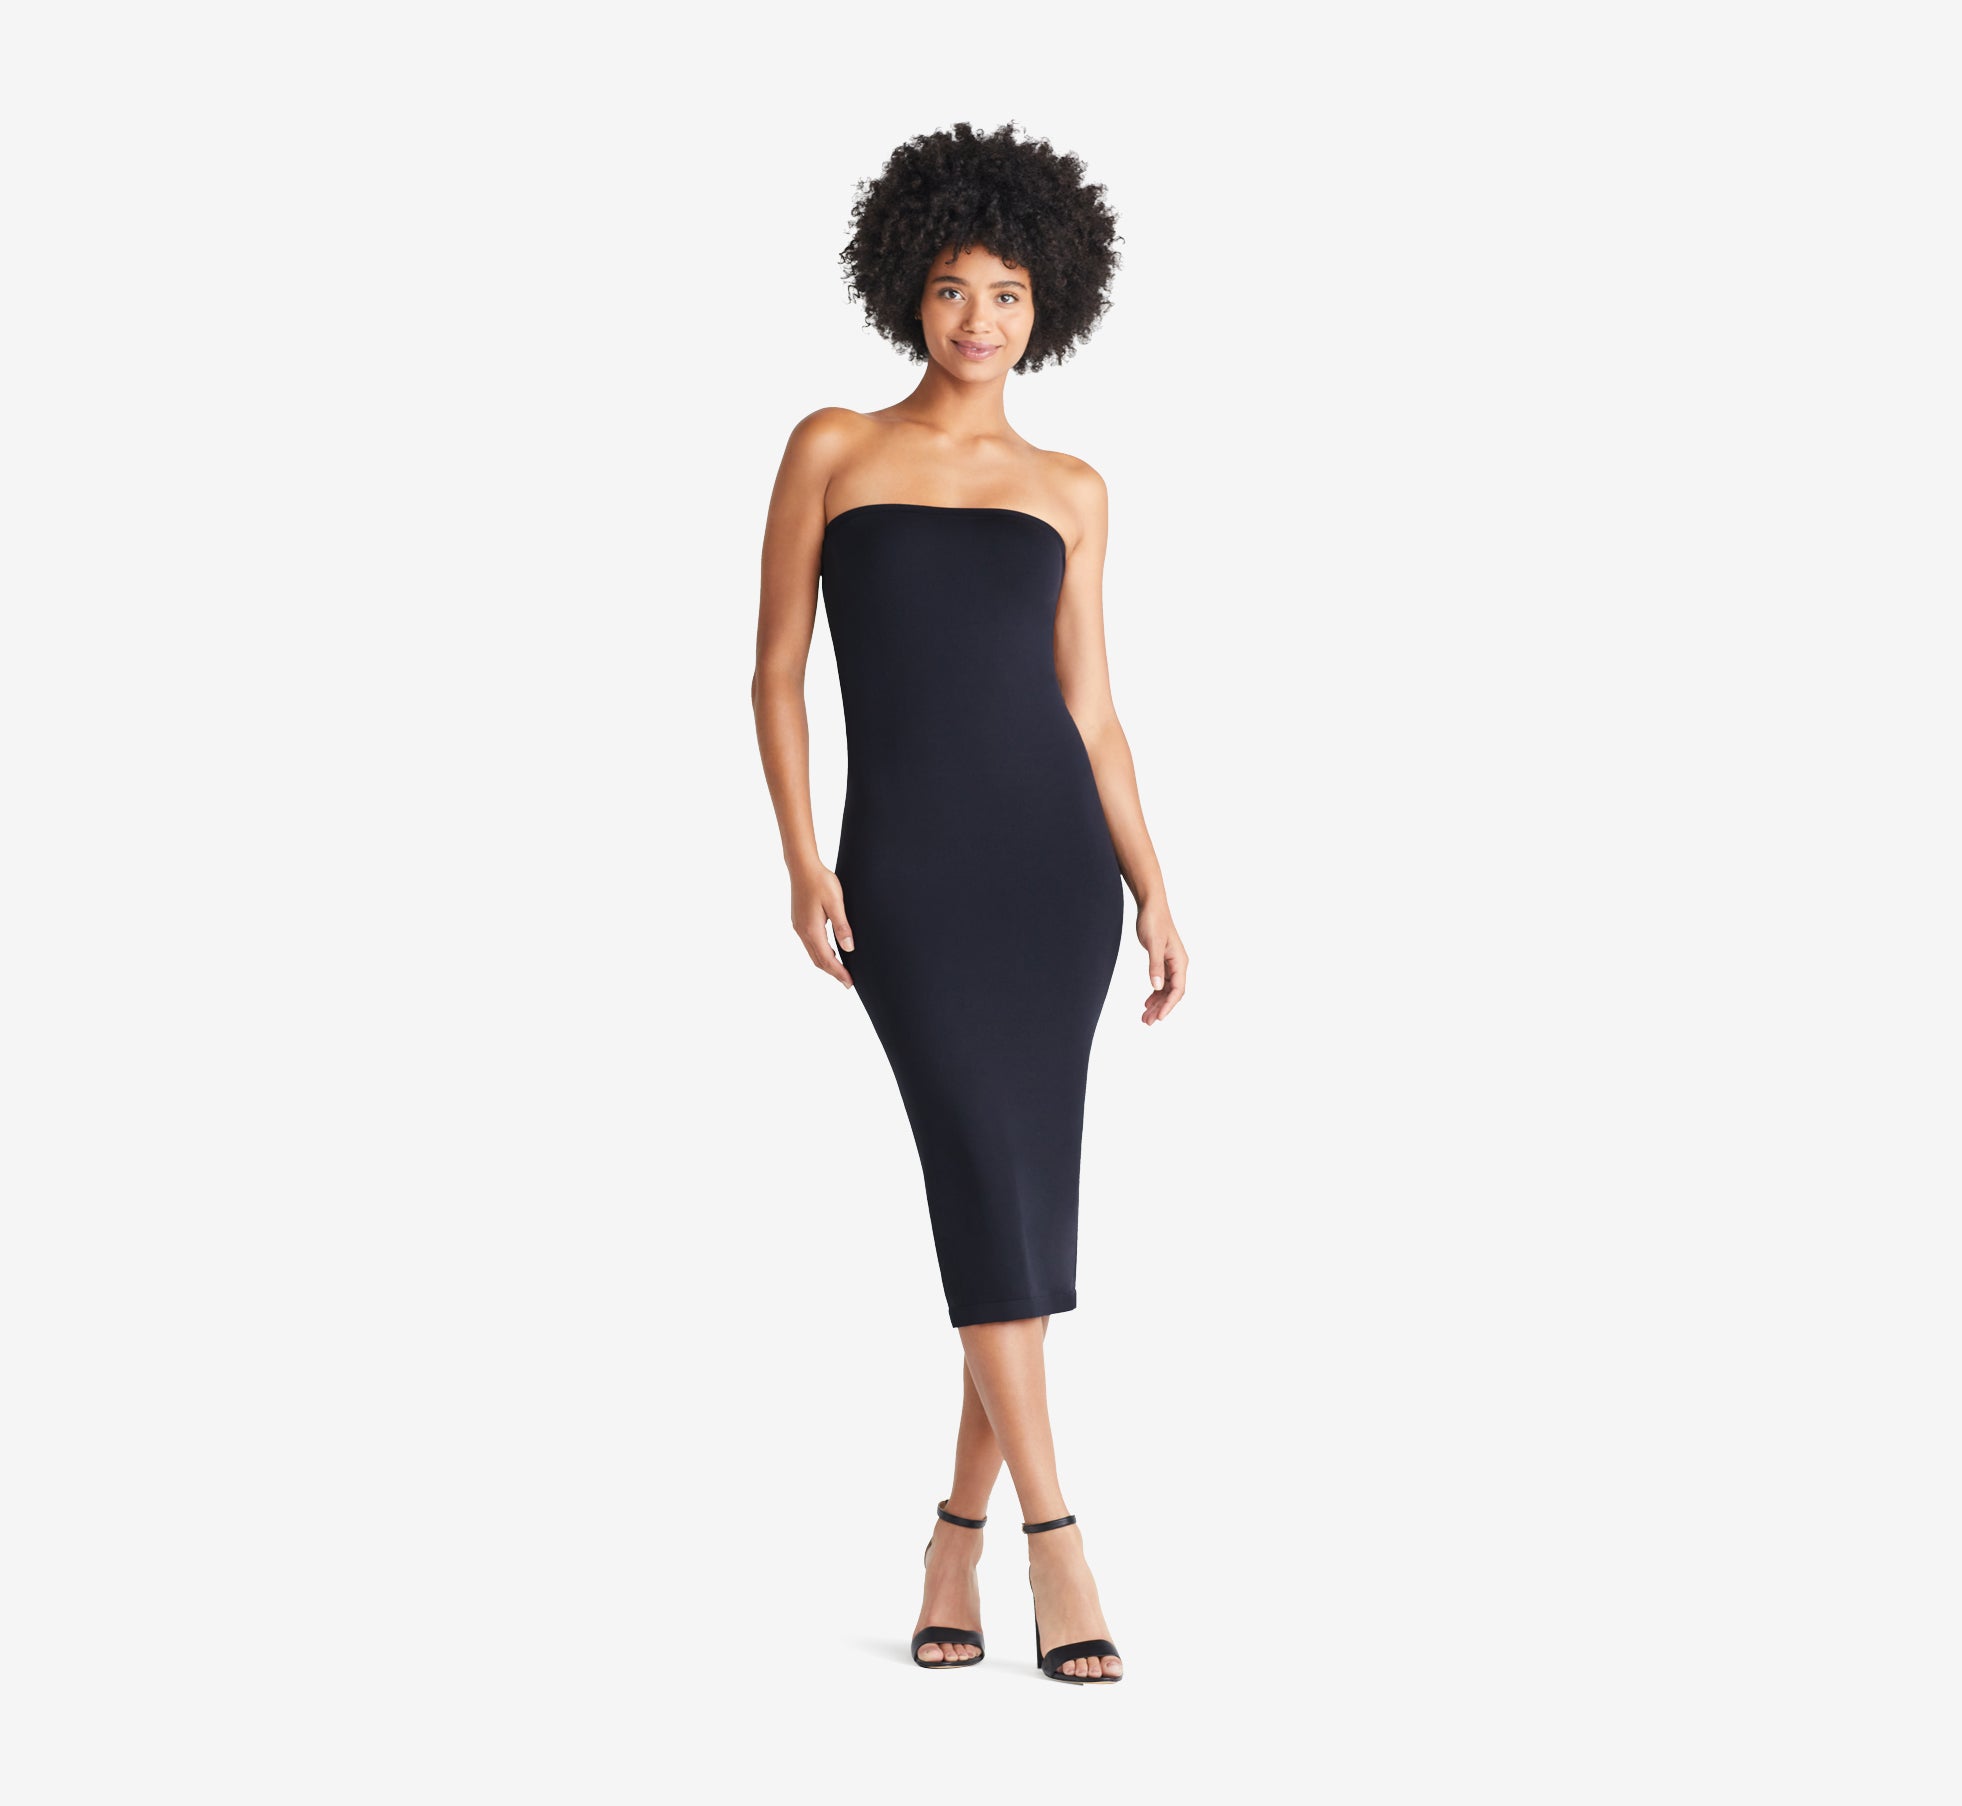 Women's Black Dress Sleeveless Midi Boob Tube Faux Leather | Ally Fashion